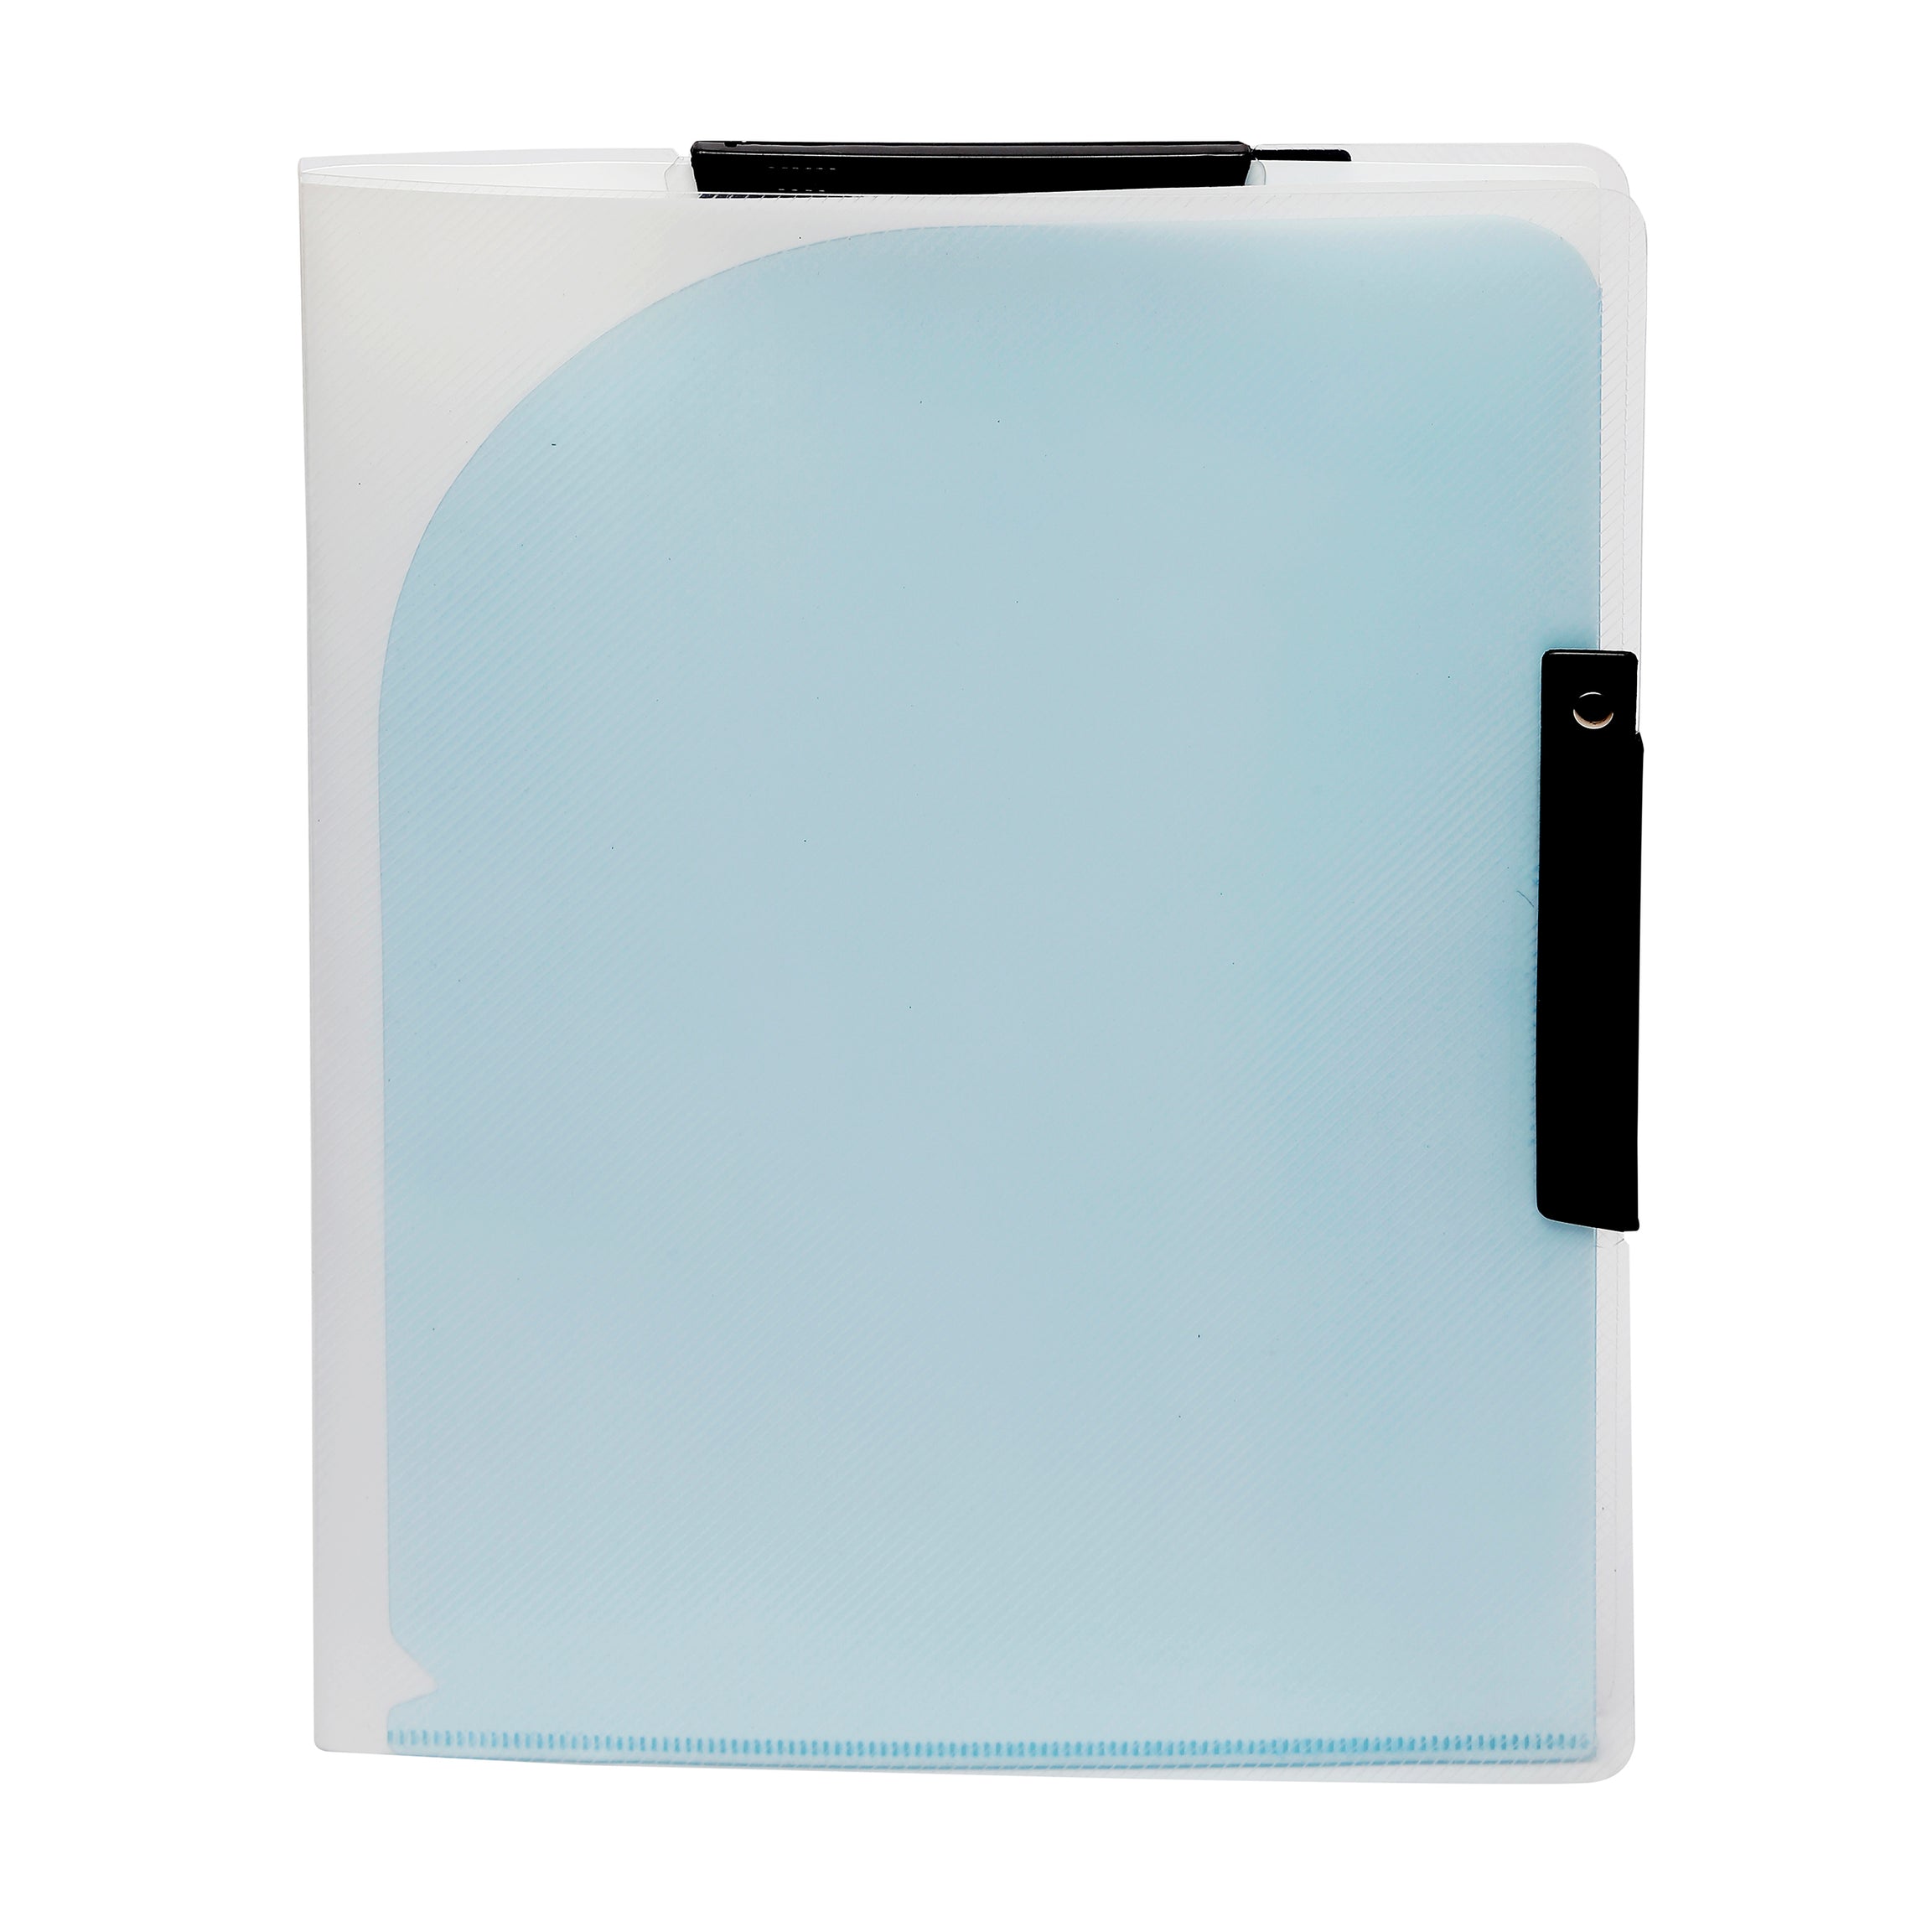 Eslee Document Folder | 6 Pockets Plastic Folder | A4 Size